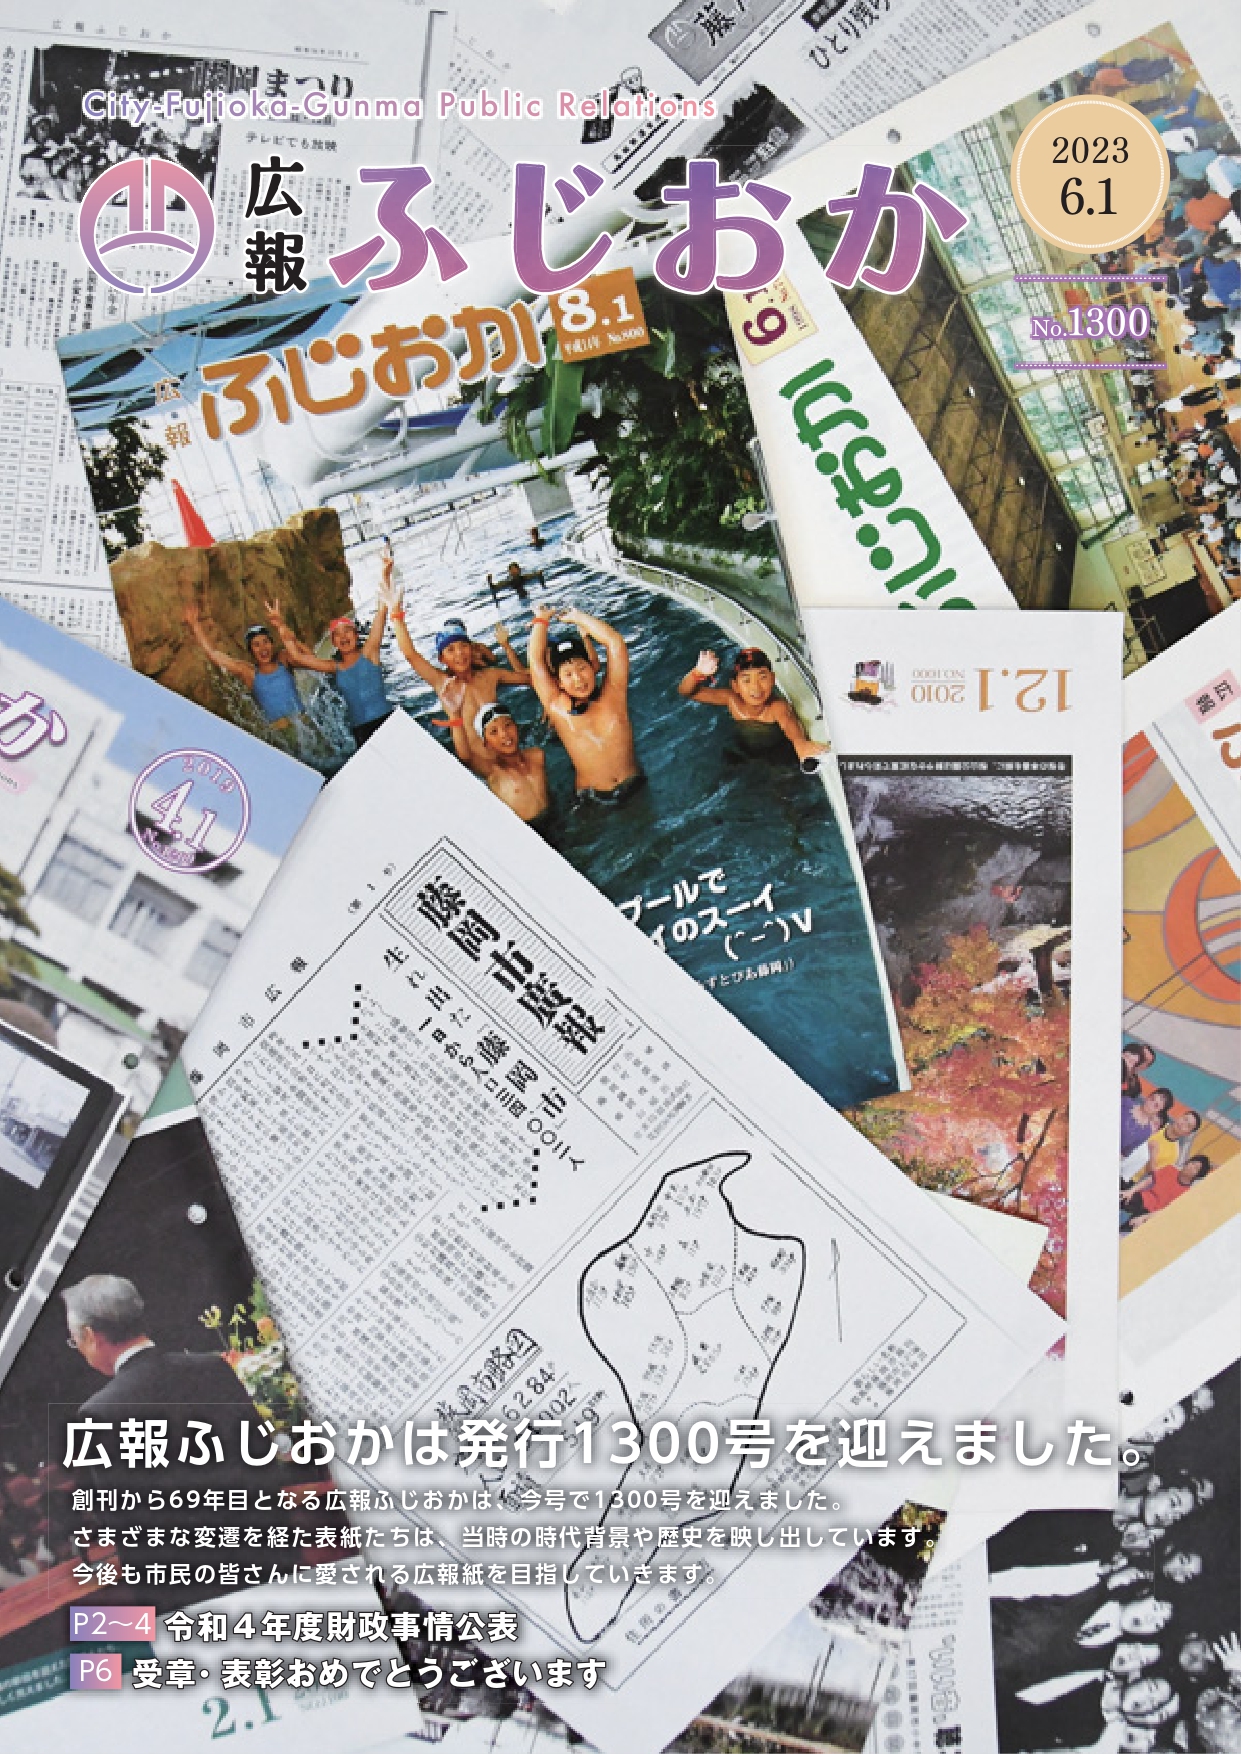 令和5年6月1日号 広報ふじおかは発行1300号を迎えました。